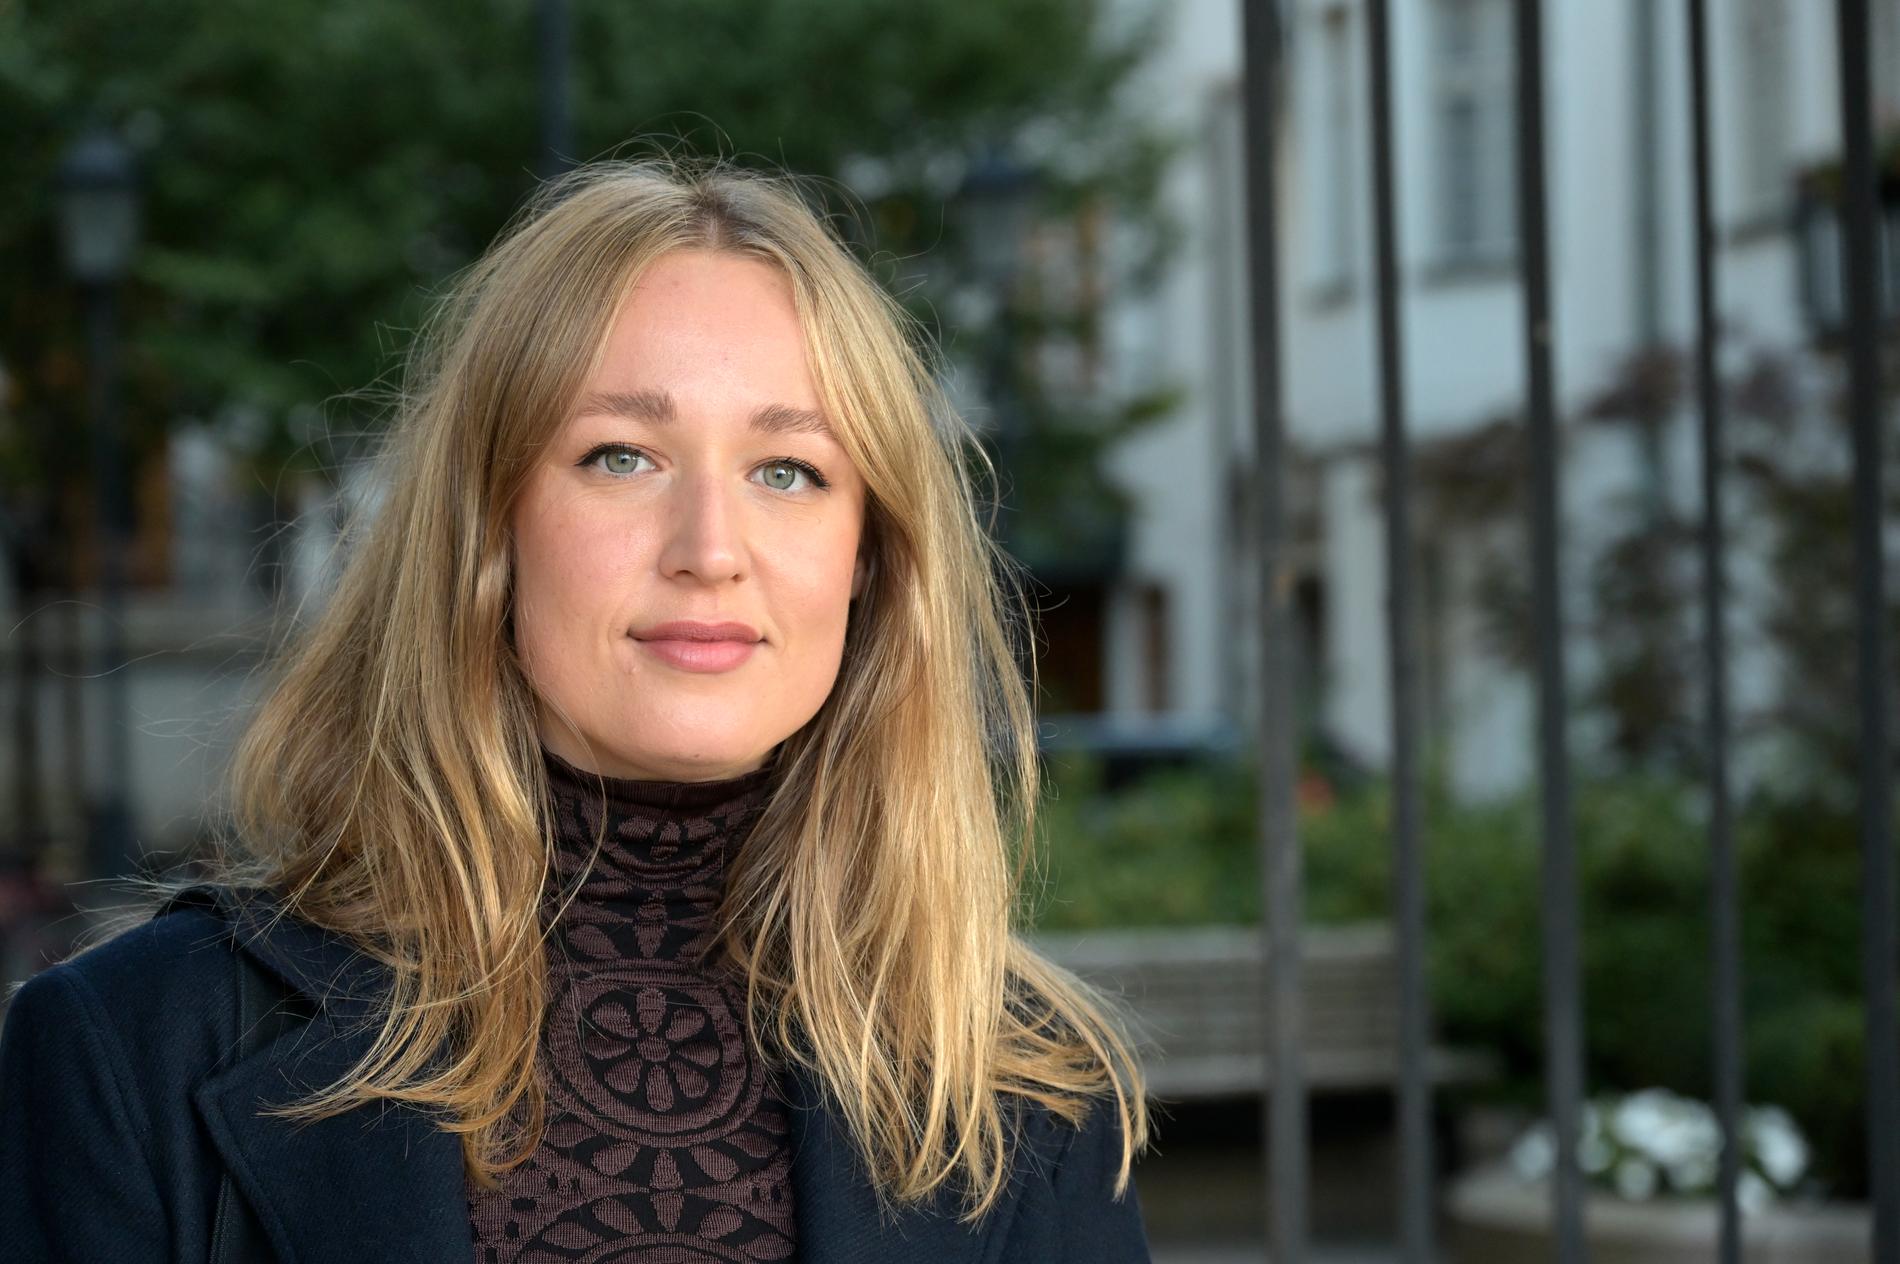 Regissören Isabel Andersson kände igen sig i Lena Nymans klassbakgrund. "Klass överlag är den intressantaste frågan att skildra", säger hon.